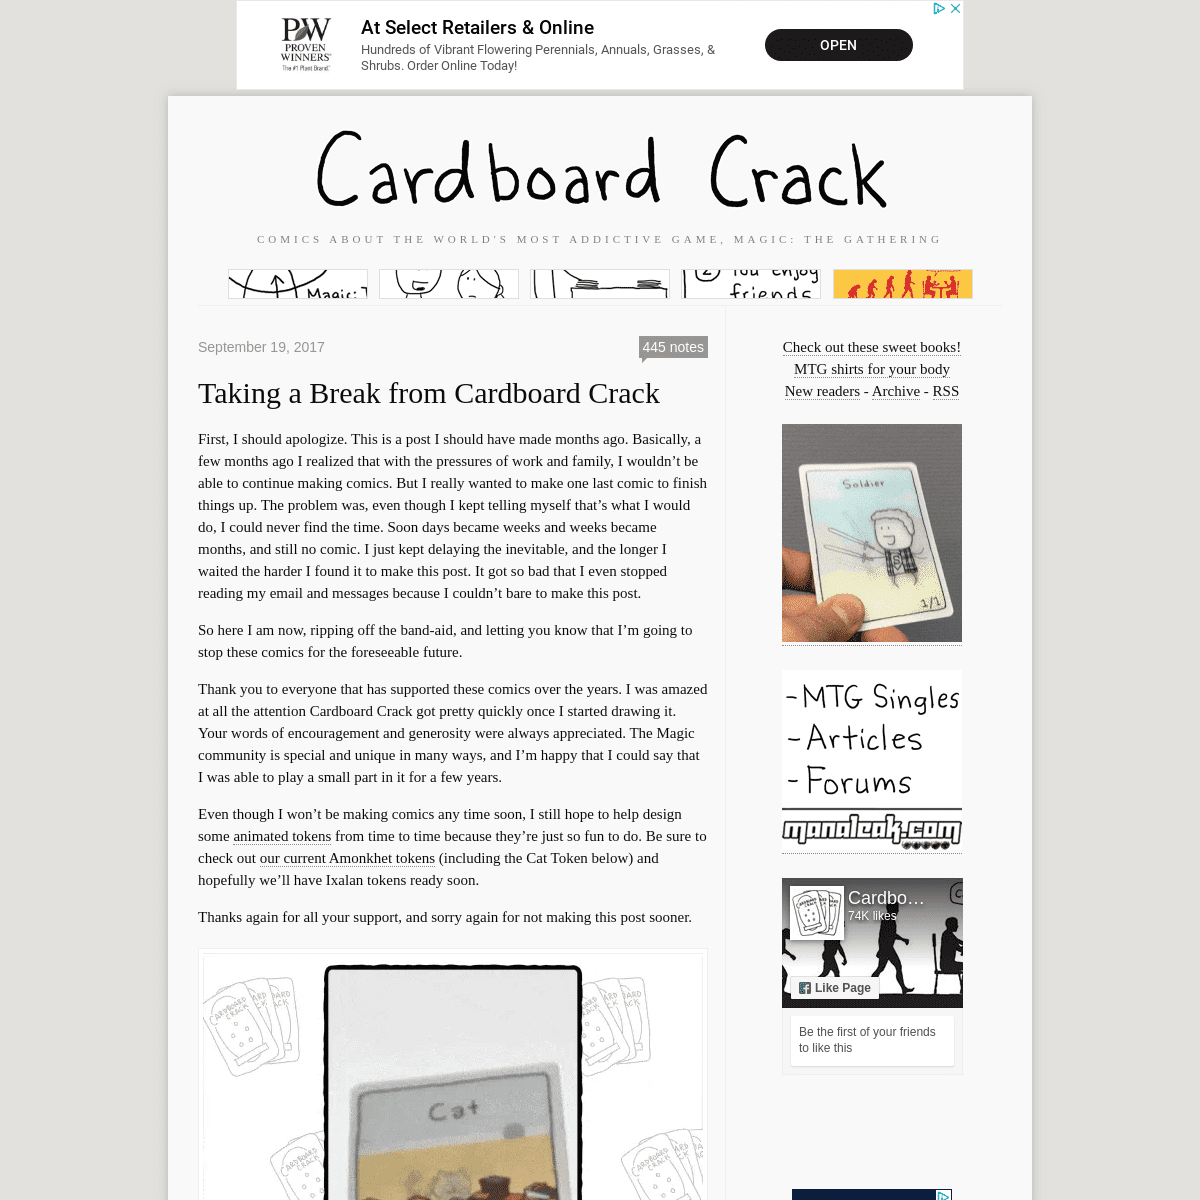 A complete backup of cardboard-crack.com